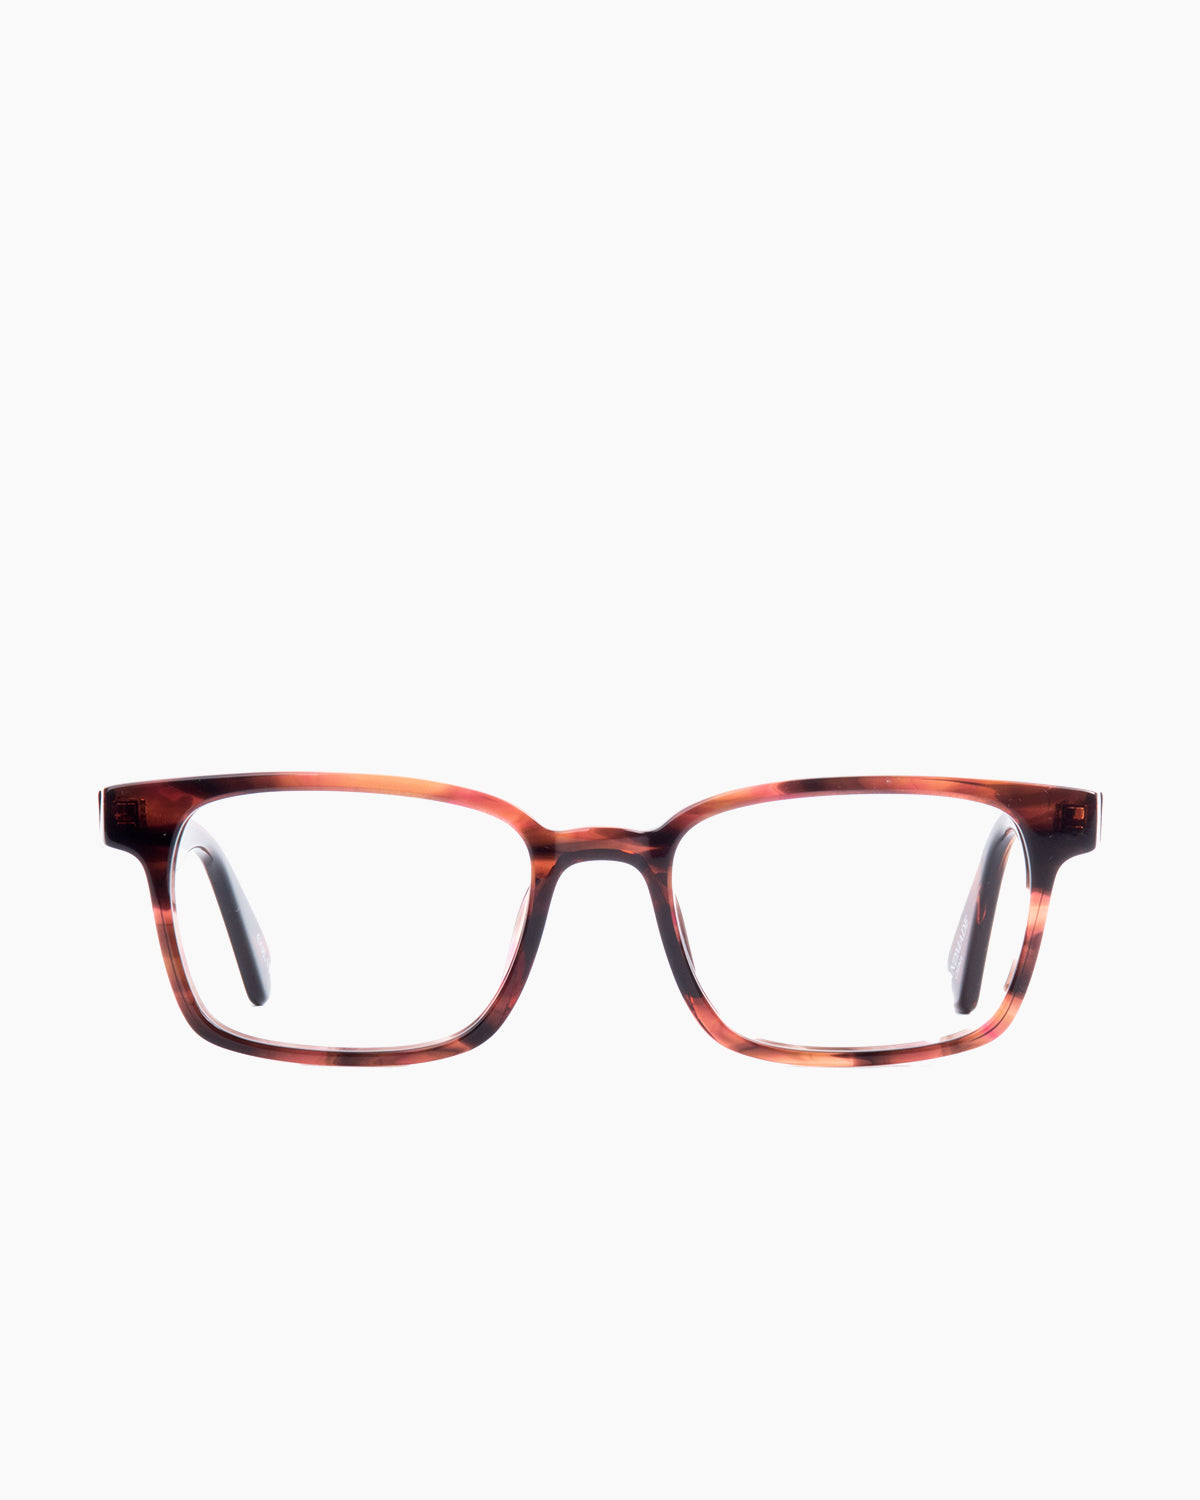 Evolve-Davis-135 | glasses bar:  Marie-Sophie Dion